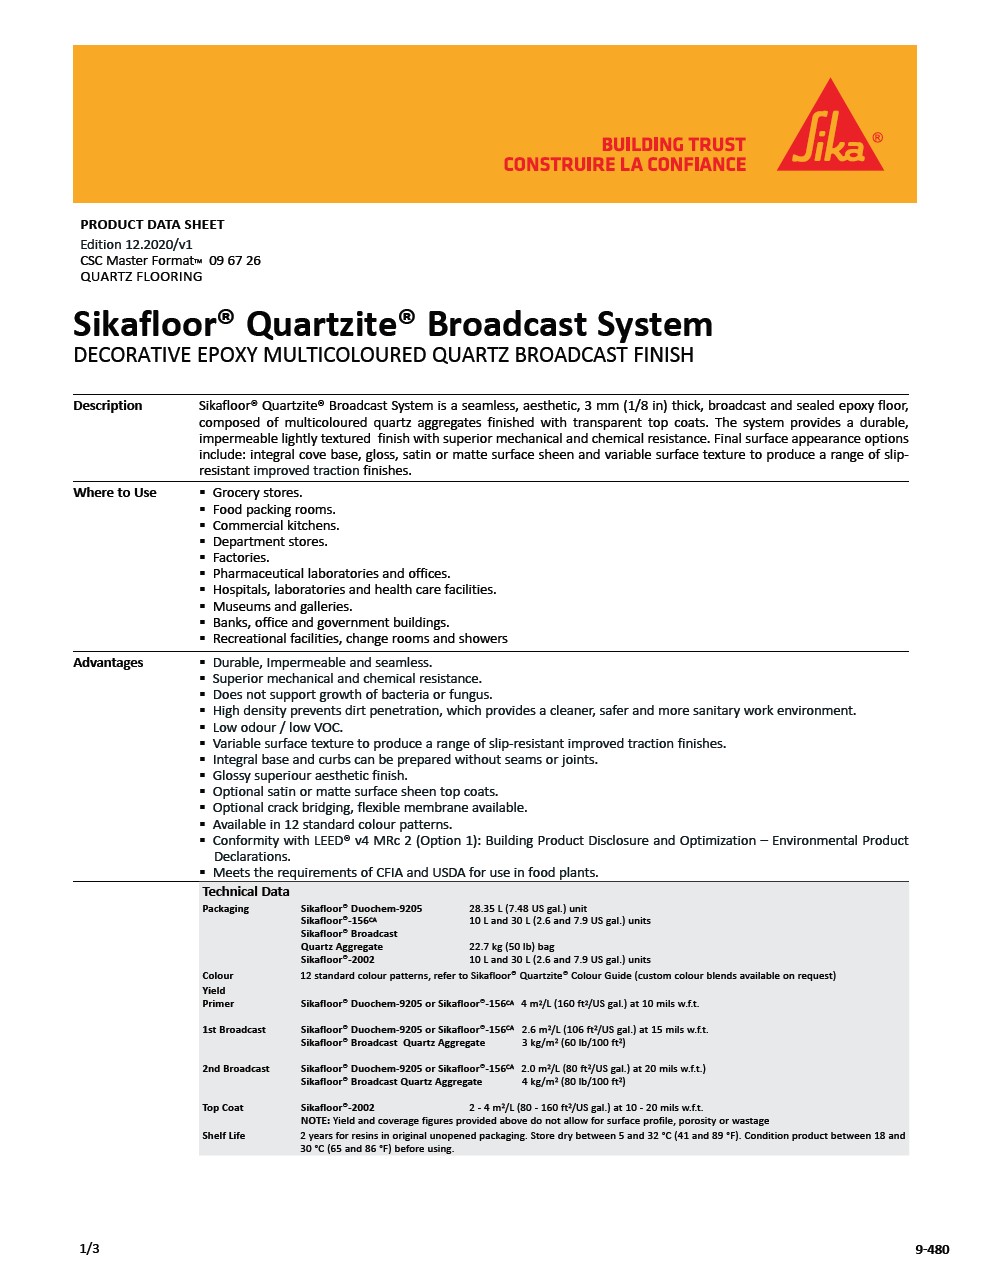 Sikafloor®-Quartzite®-Broadcast System